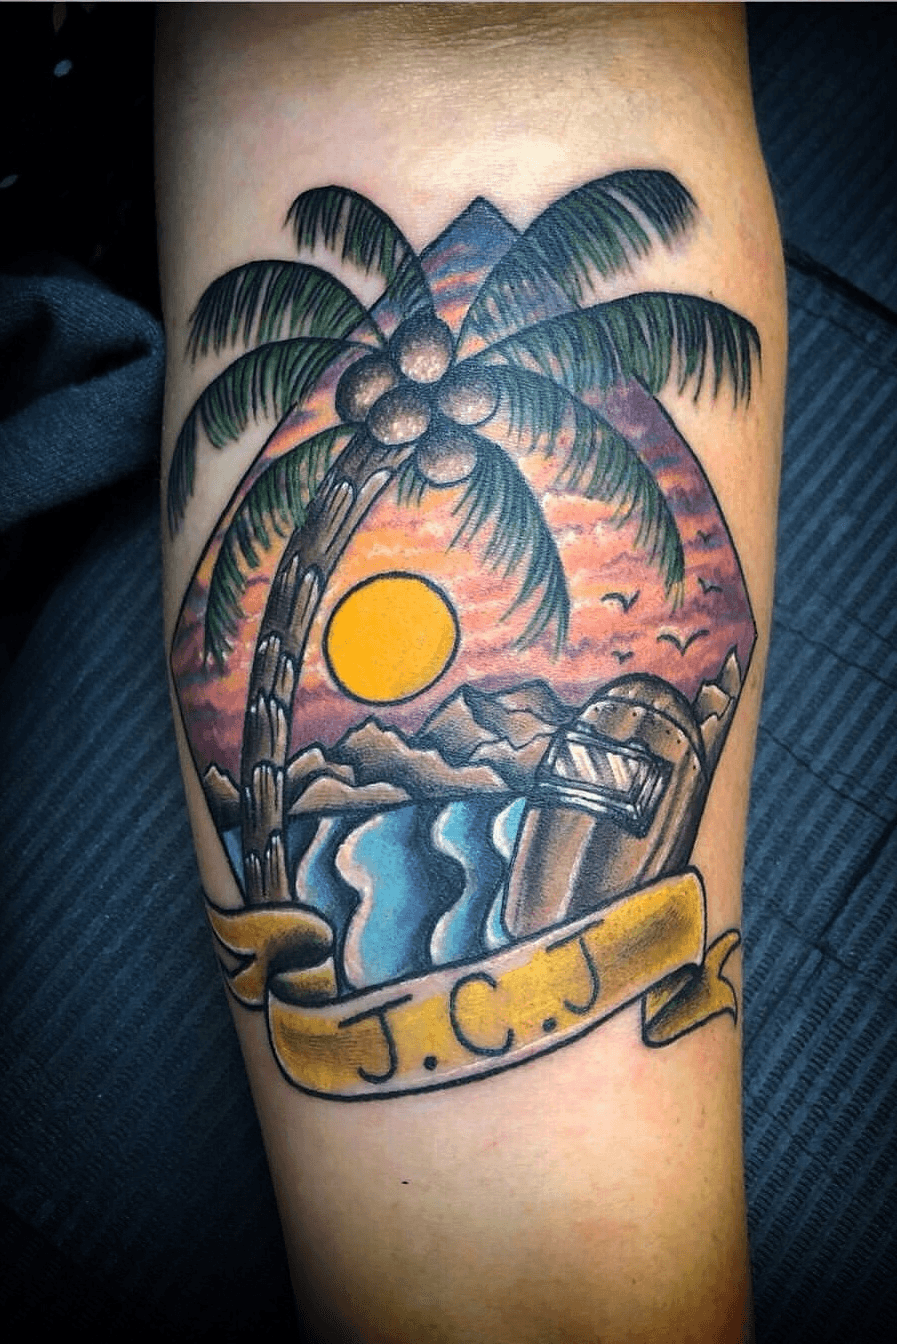 Channel island paradise tattoo  Paradise tattoo Tattoos Tatting